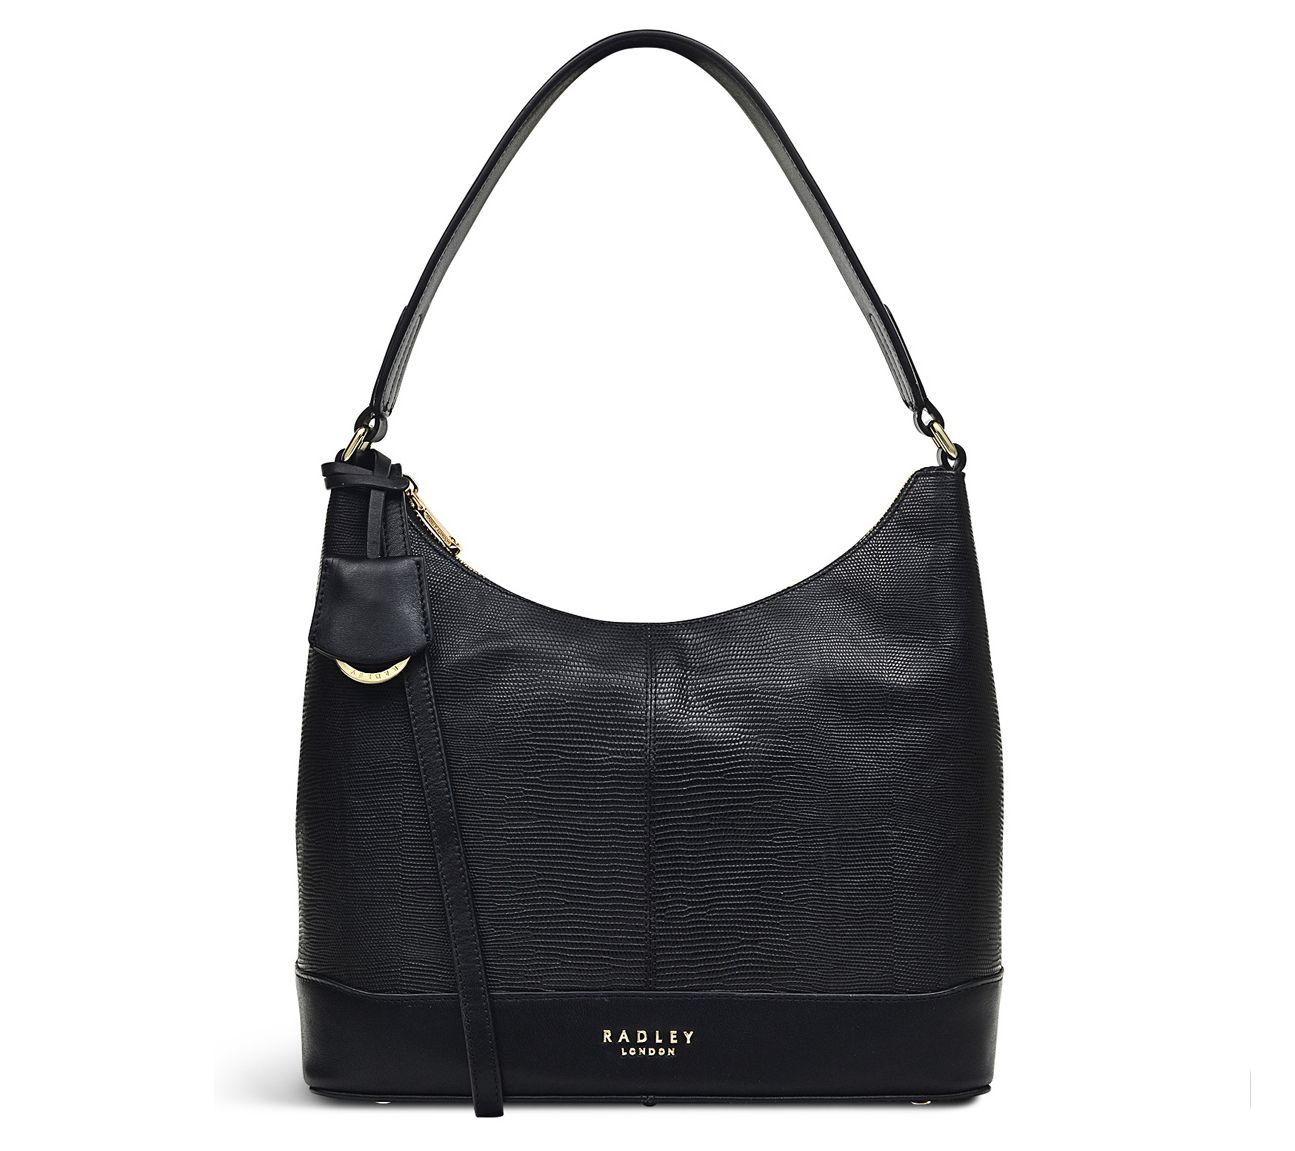 Buy the Radley London Shoulder Bag Black